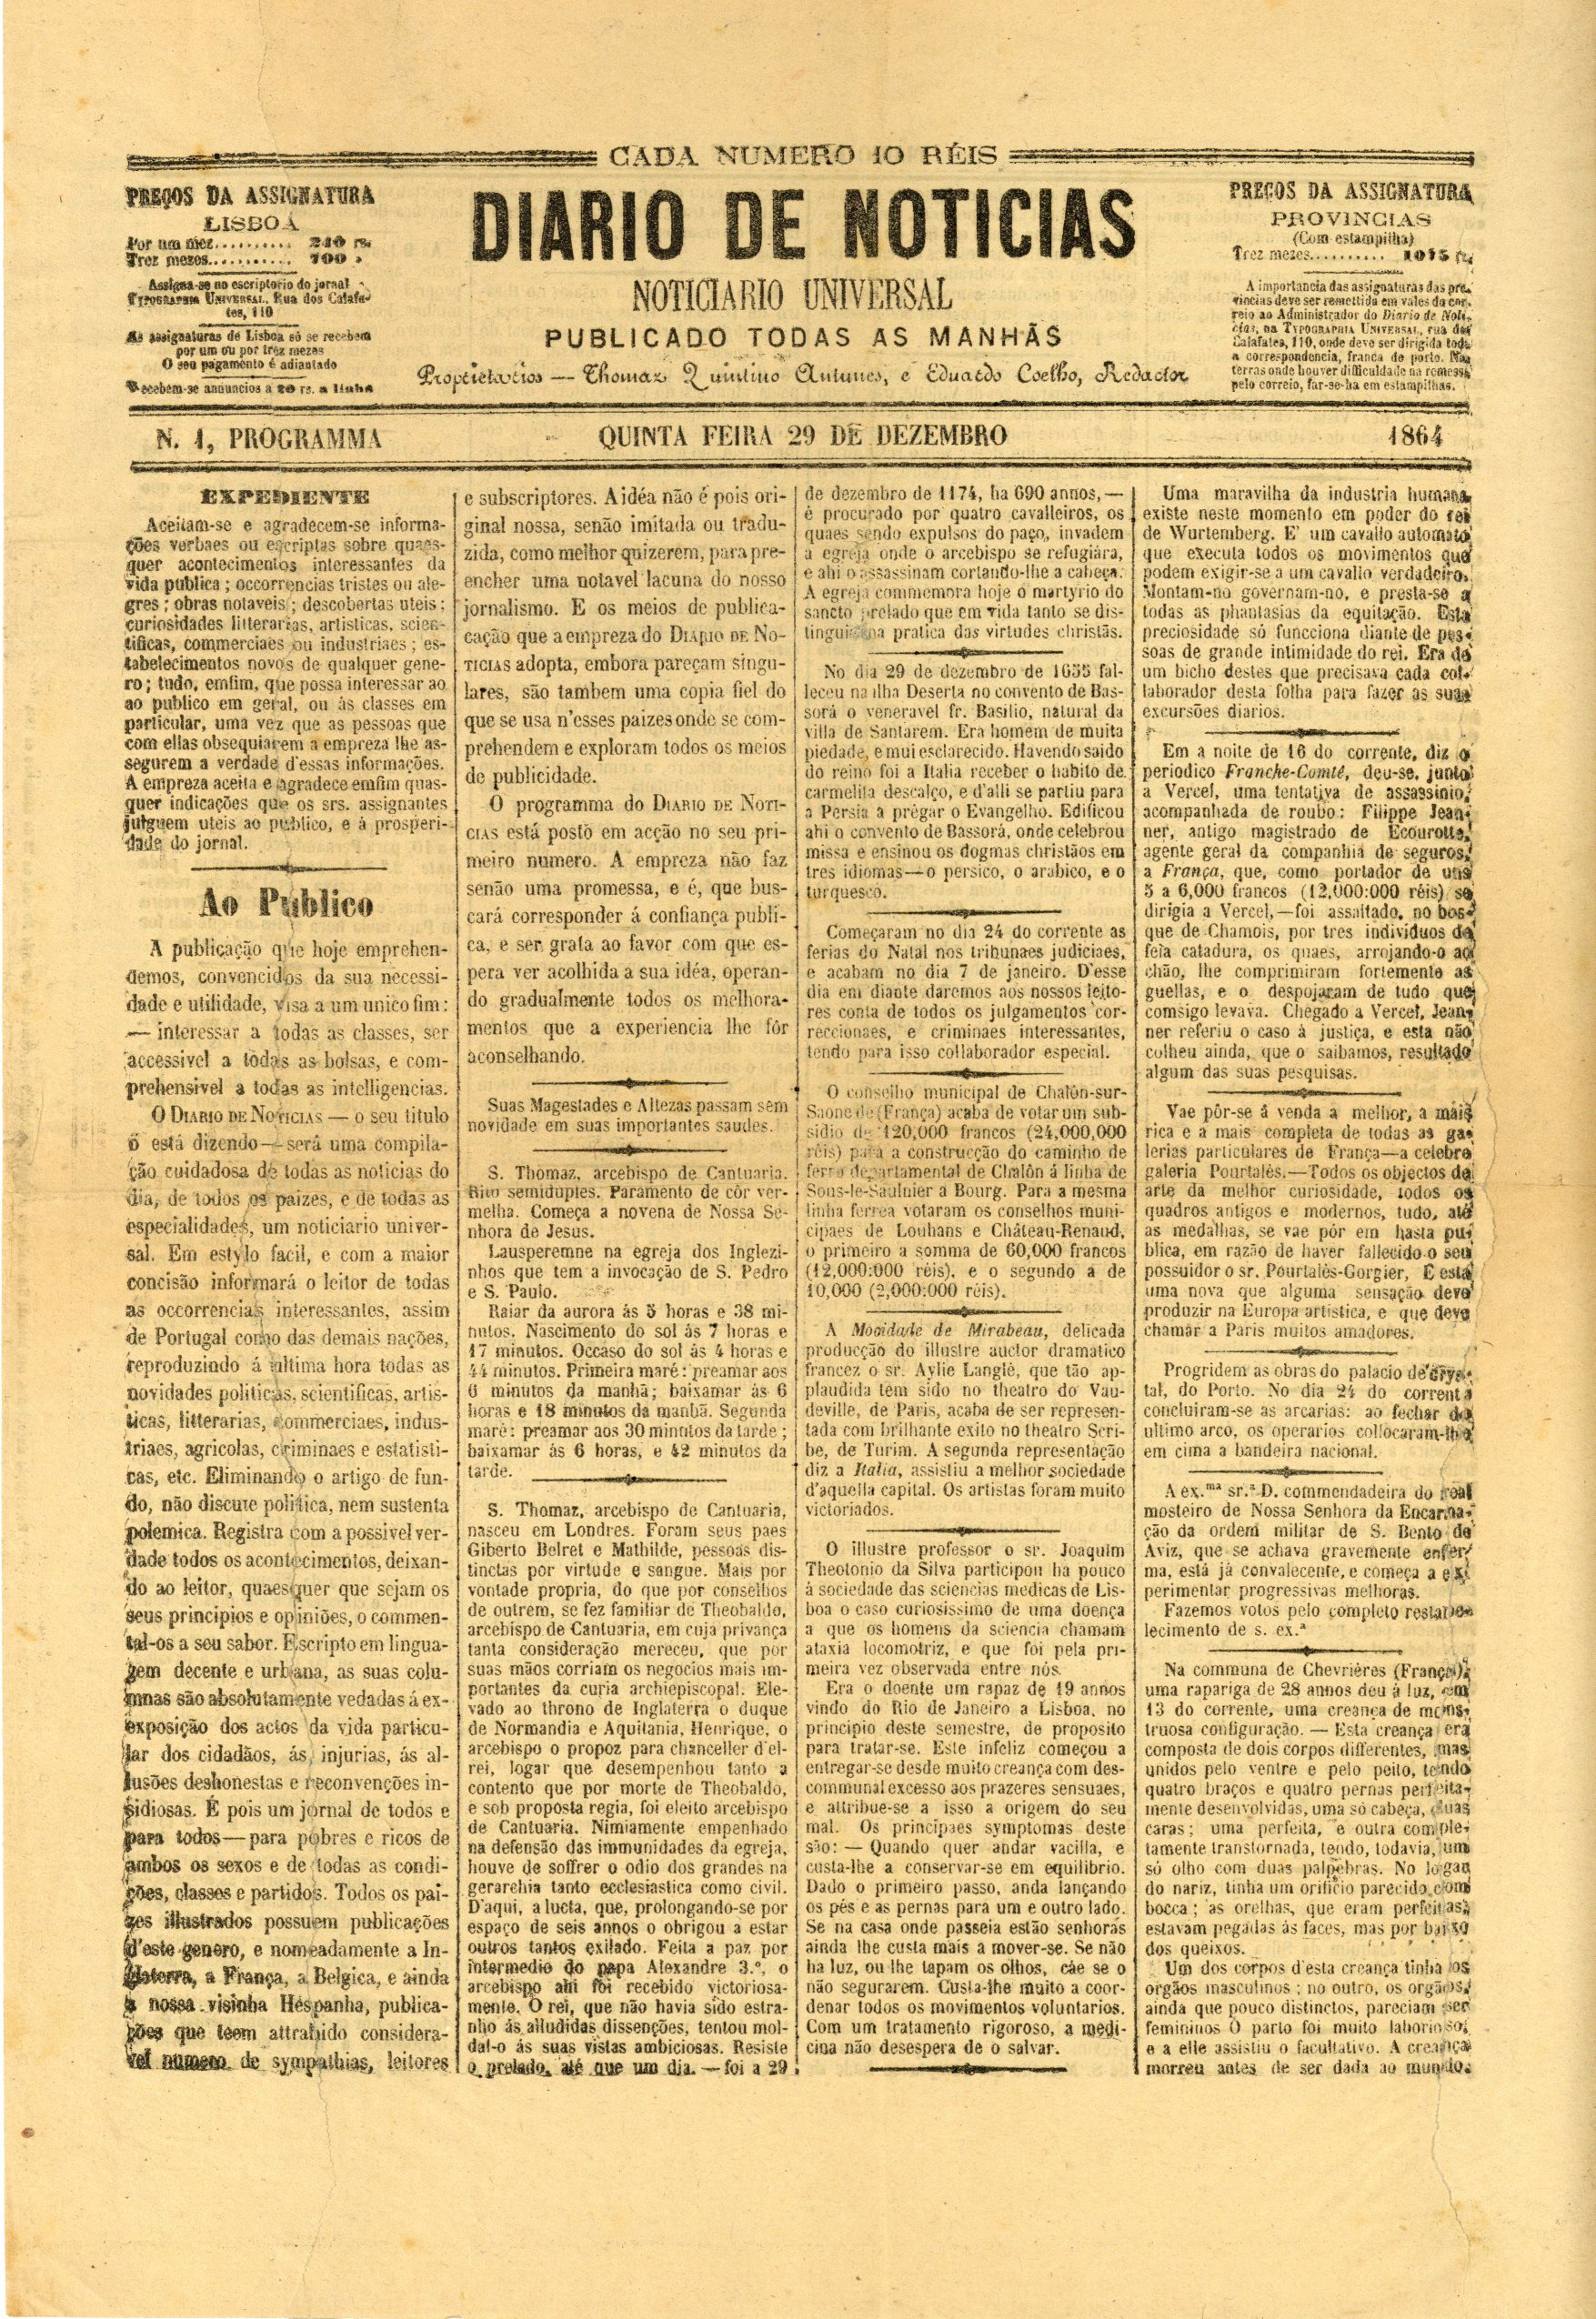 Efemérides | Diário de Notícias (1864-2014)